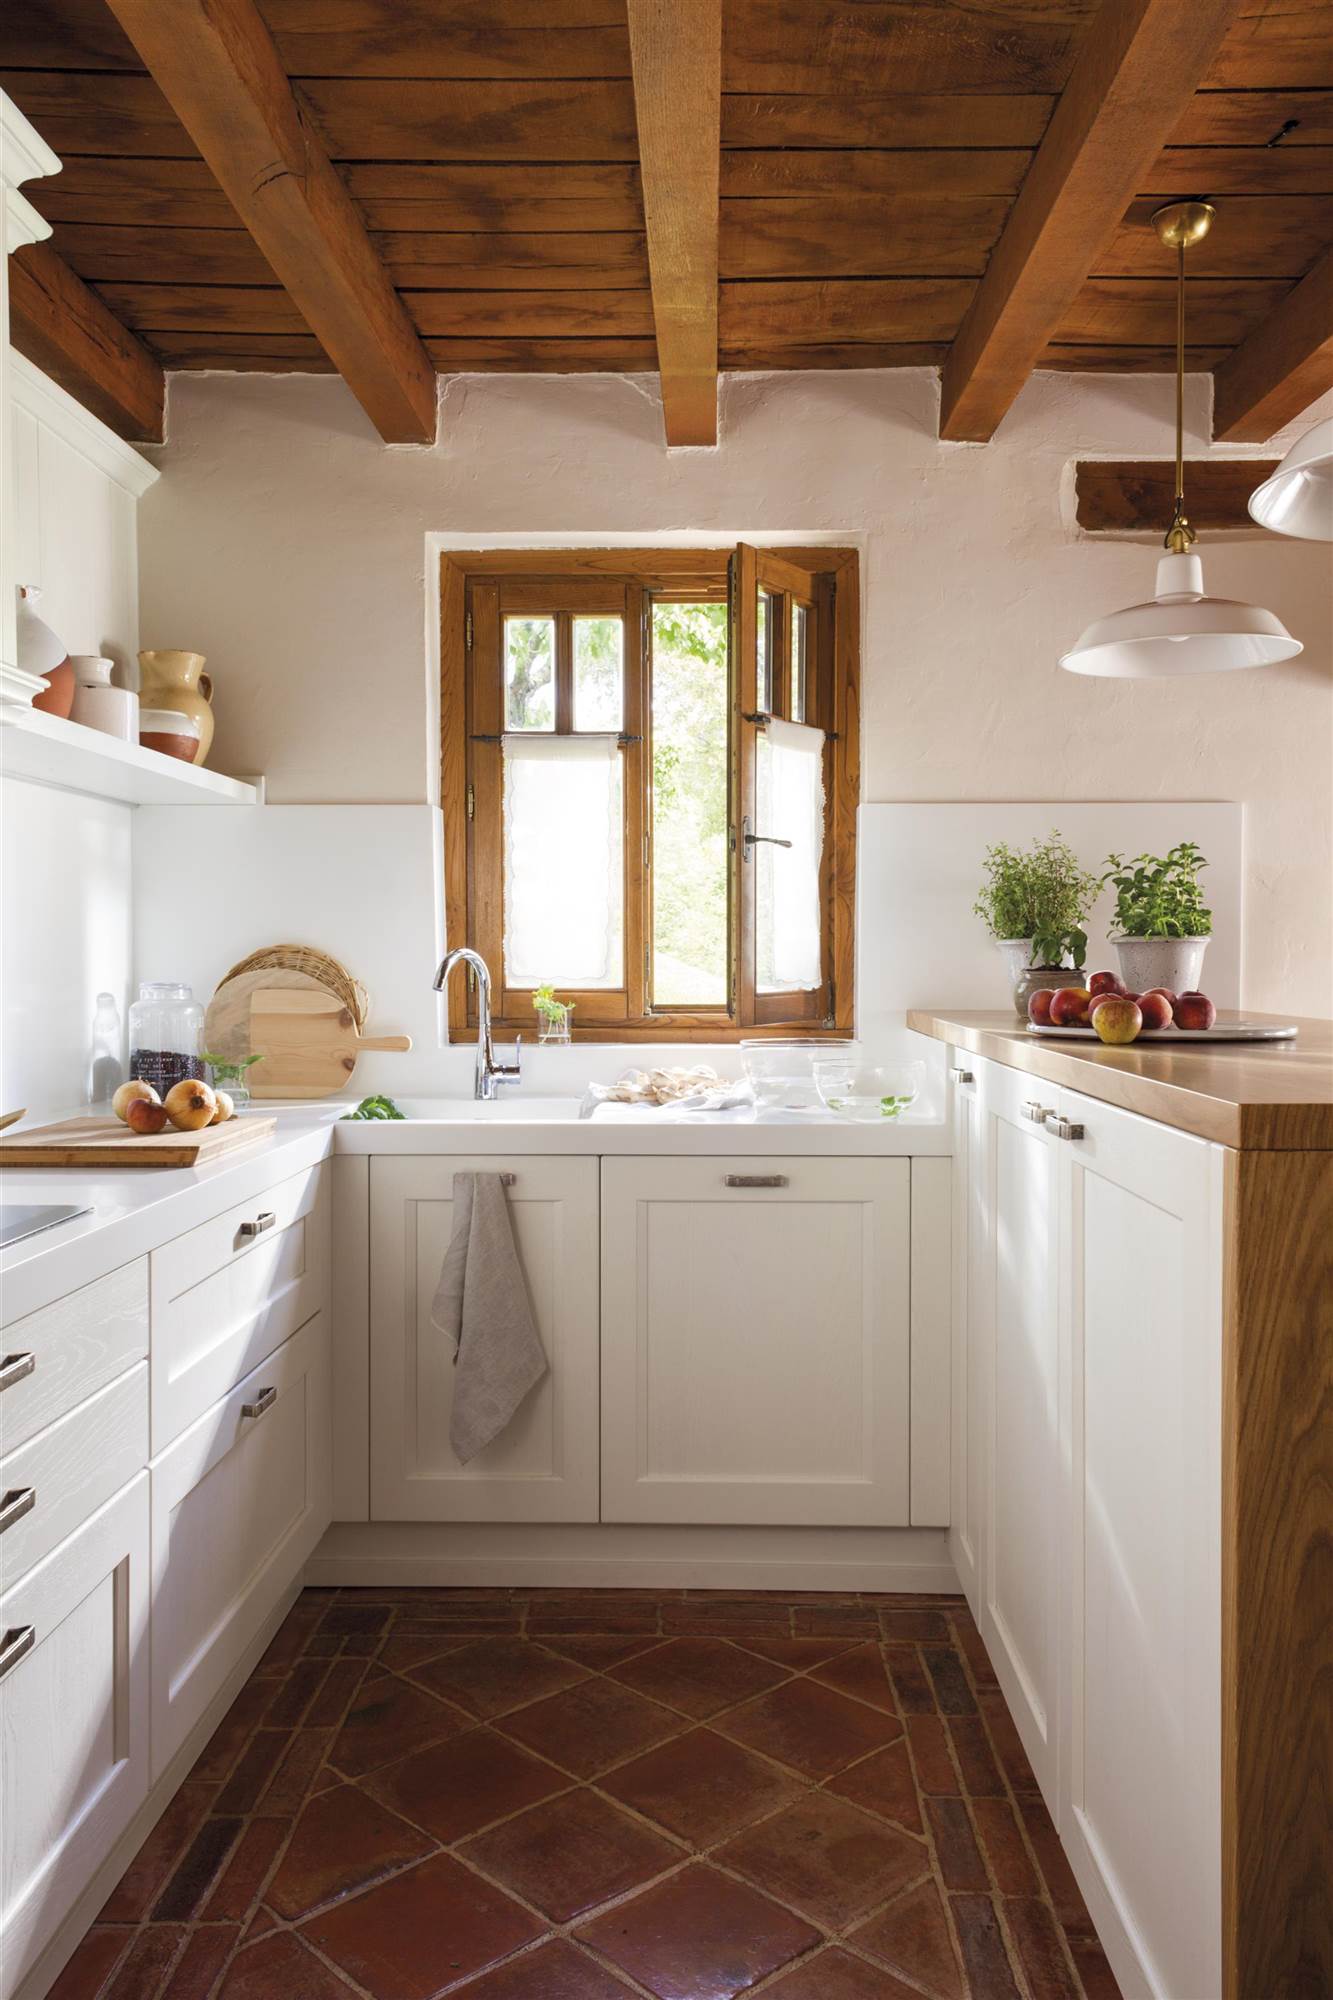 Cocina pequeña en blanco son suelos de barro y techo de madera con vigas. 